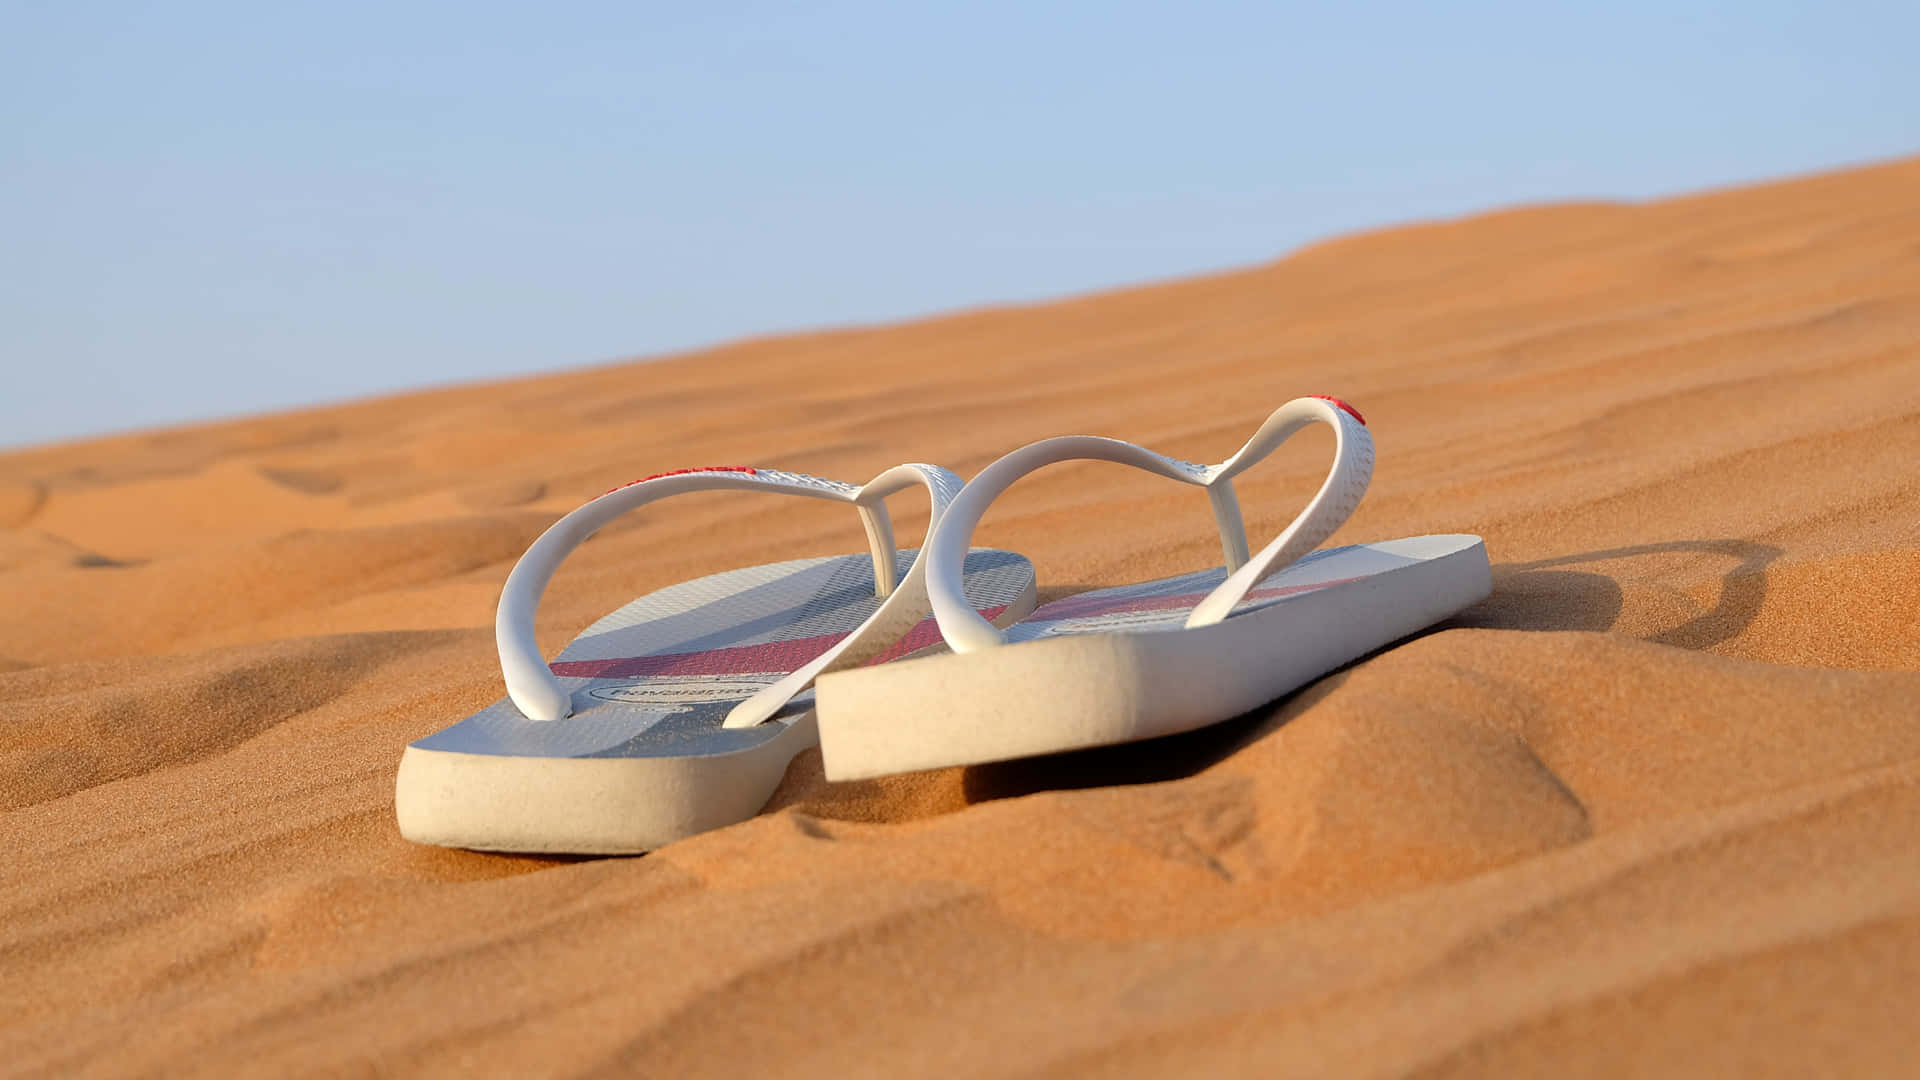 Sunlit beach sandals awaiting adventure Wallpaper